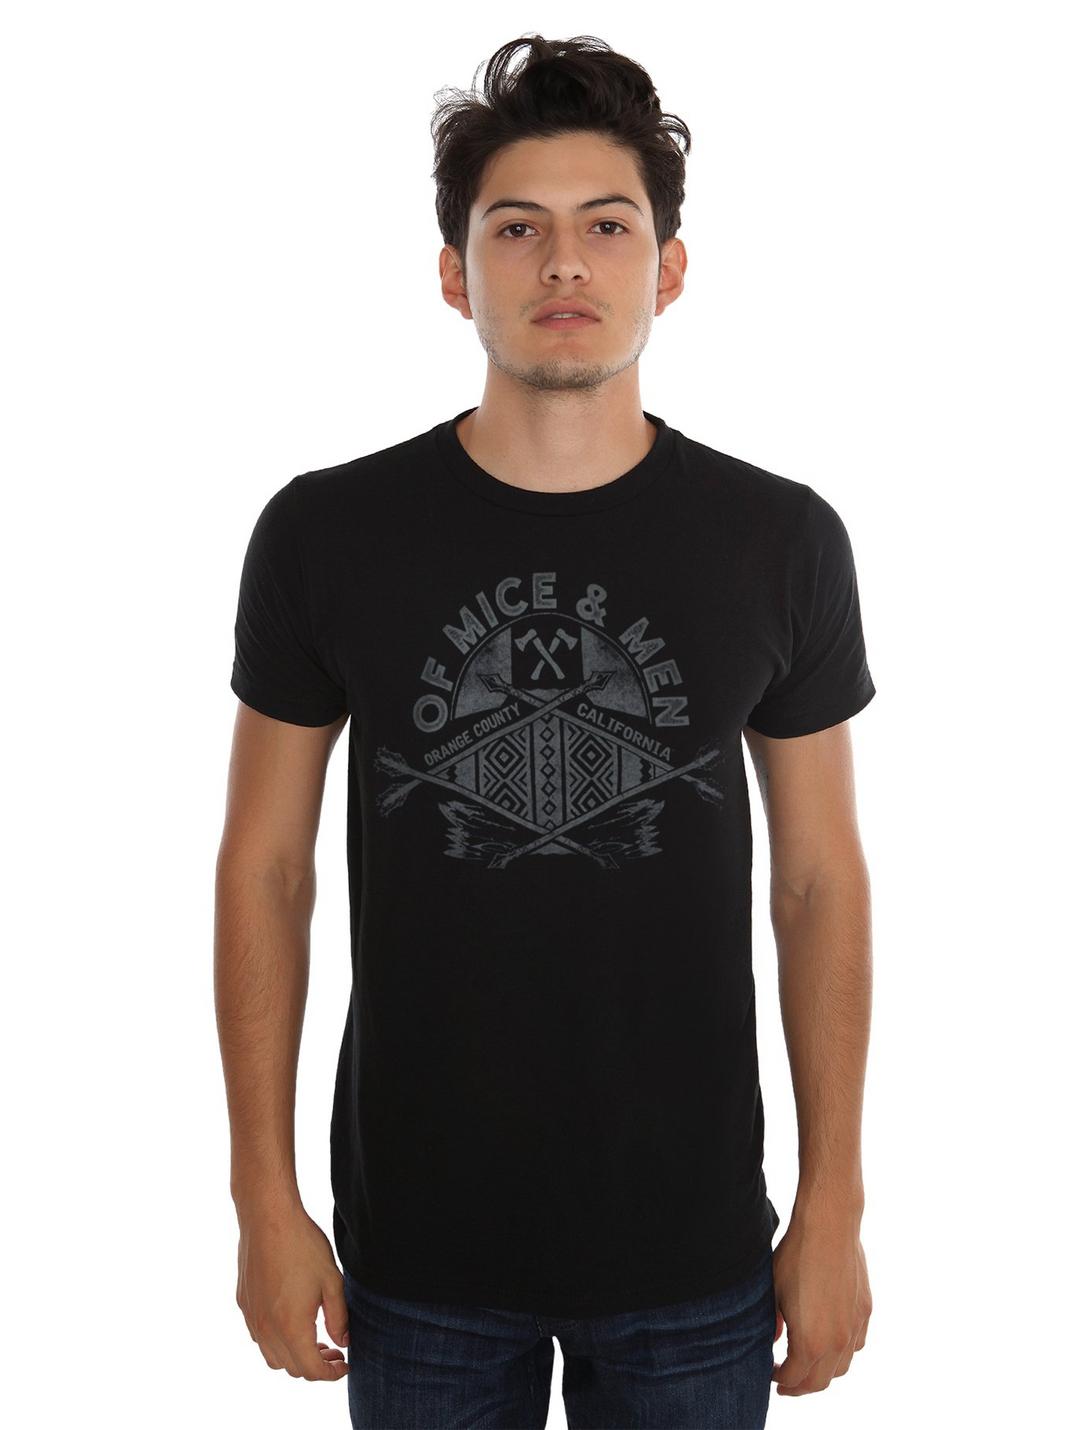 Of Mice & Men Arrows Logo T-Shirt, BLACK, hi-res